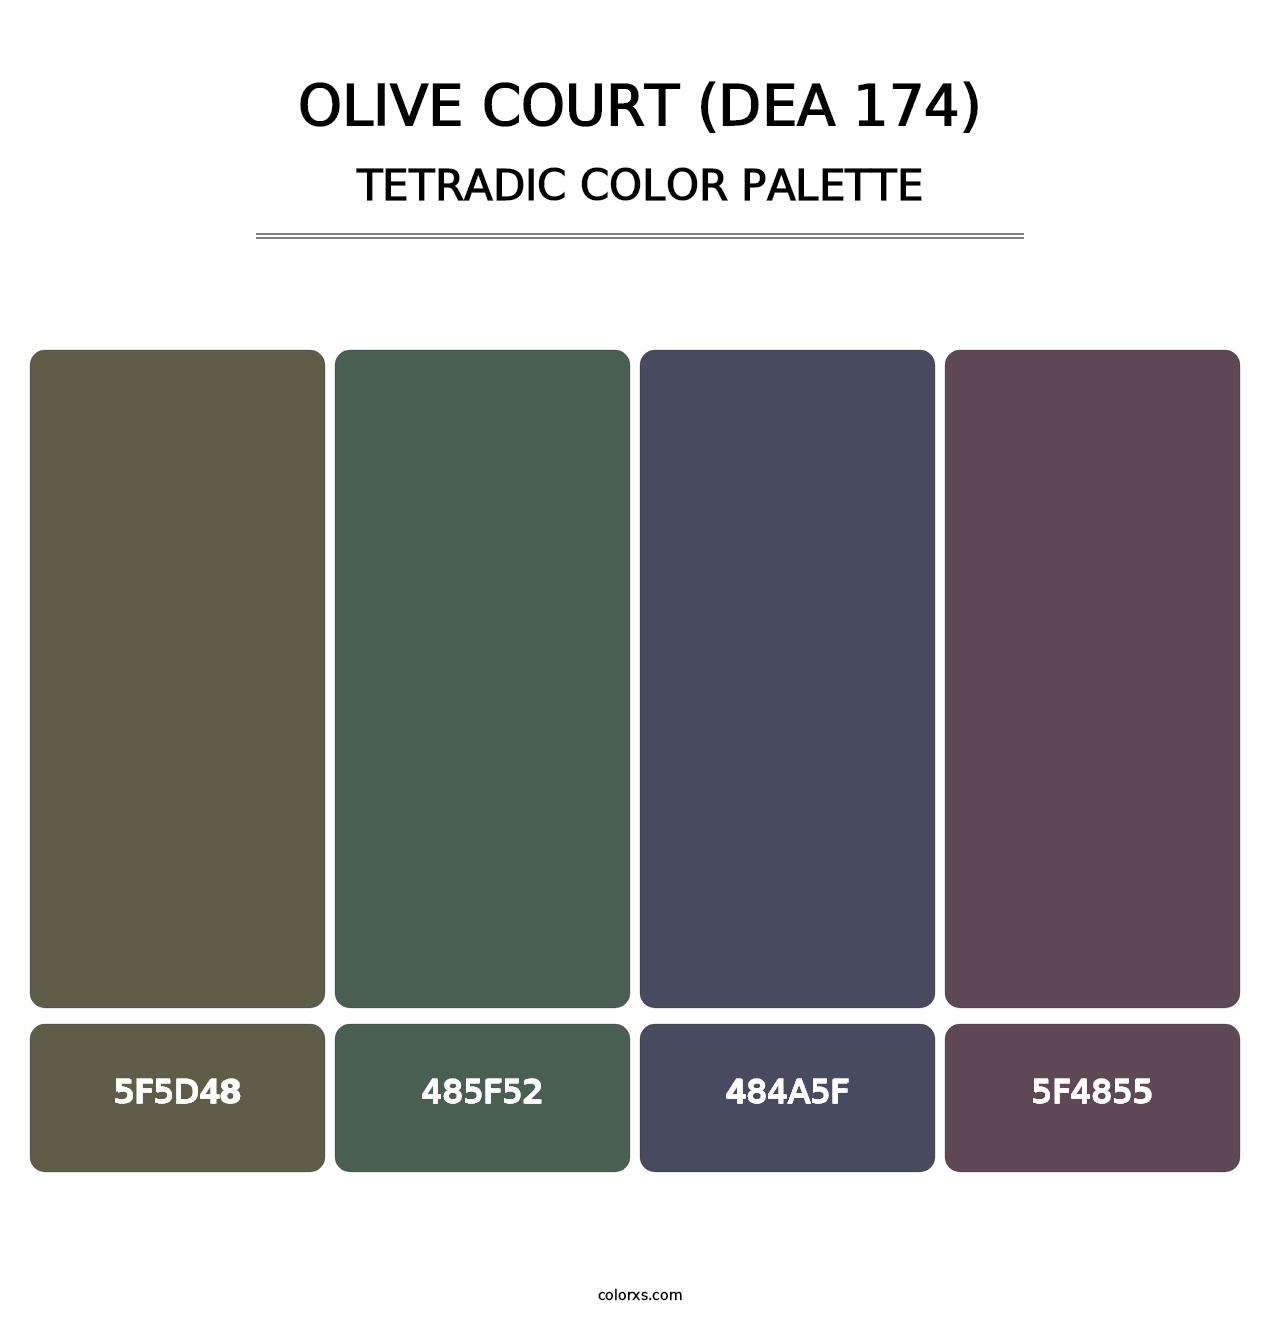 Olive Court (DEA 174) - Tetradic Color Palette